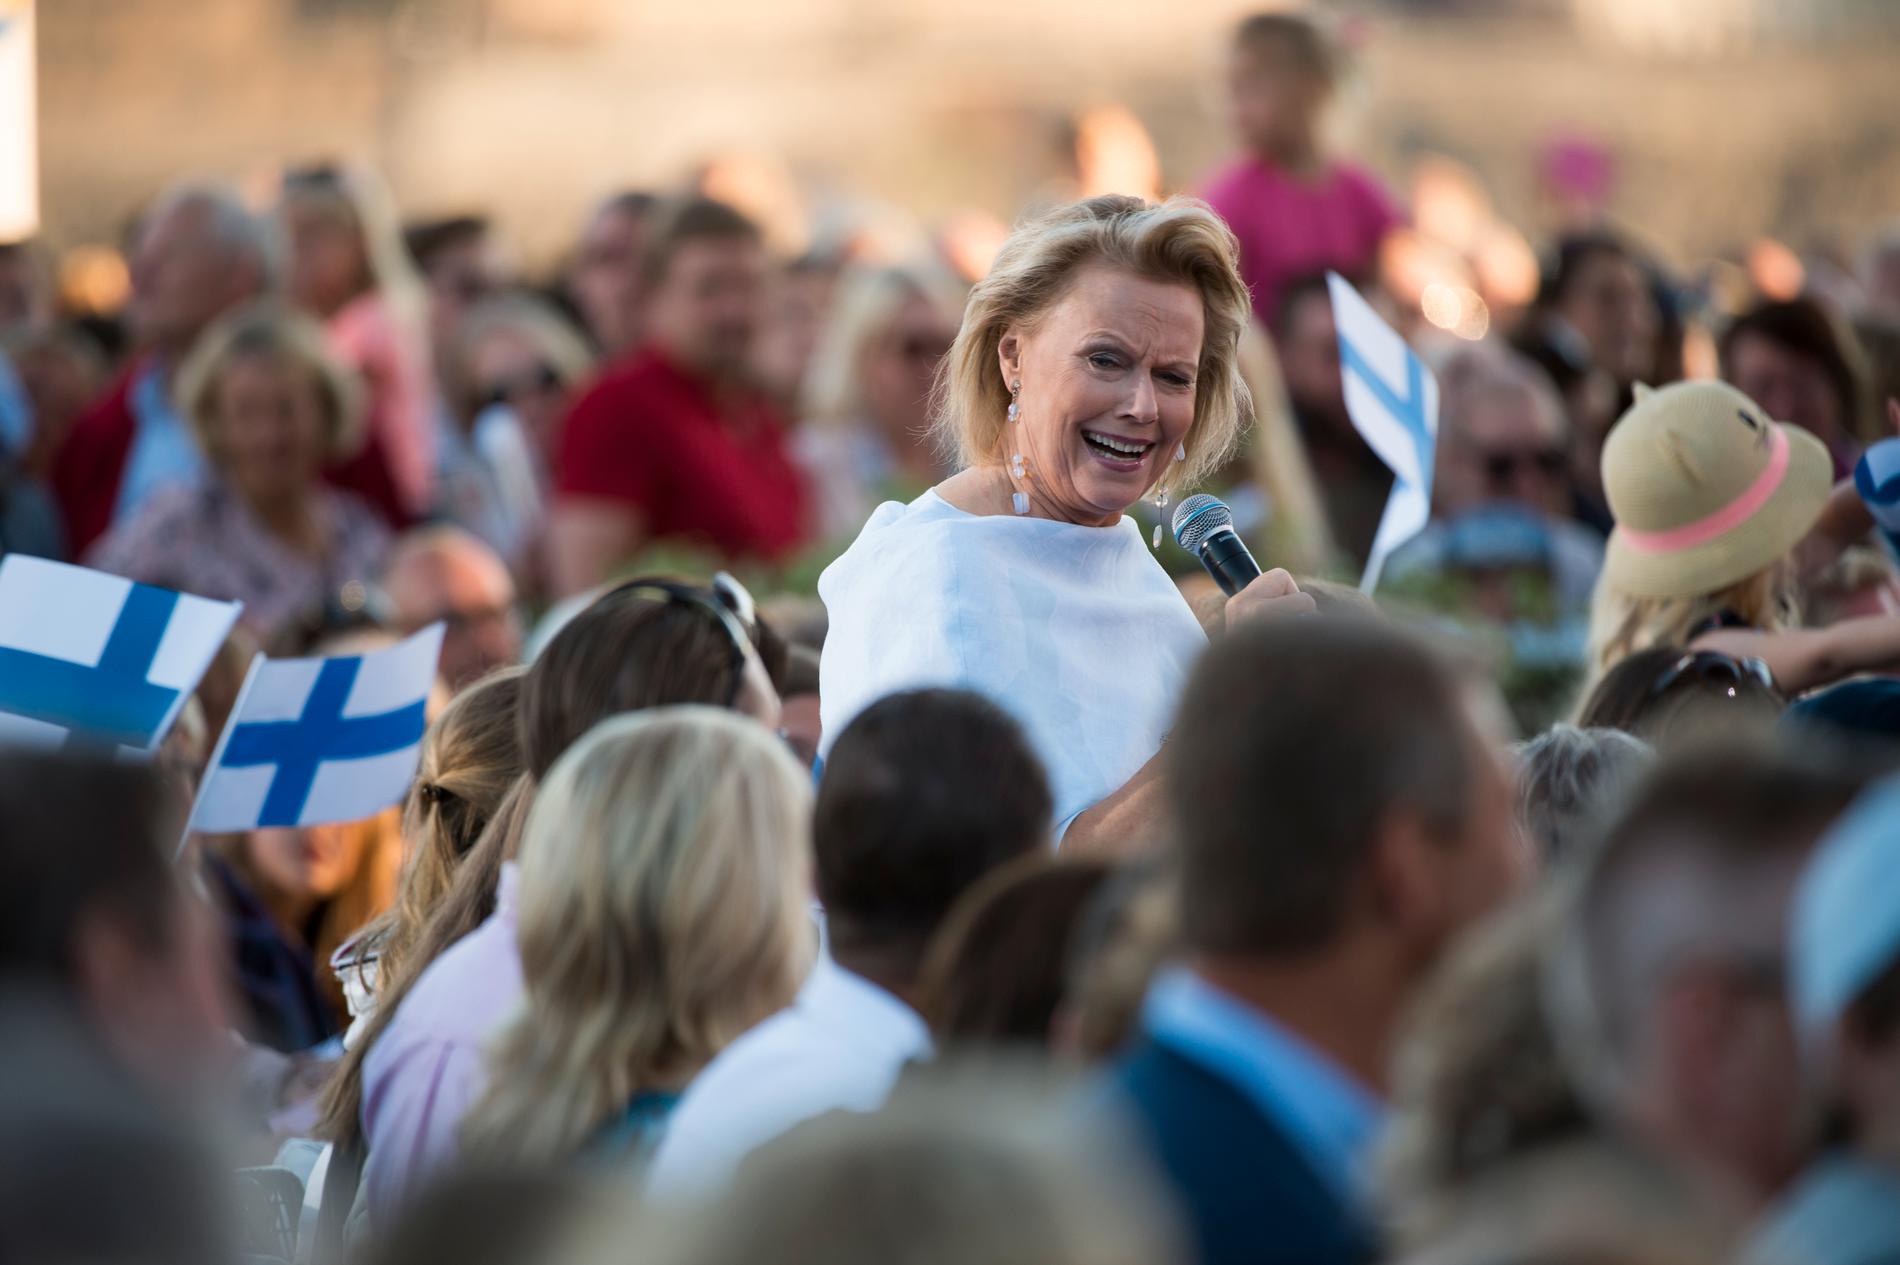 Arja Saijonmaa hyllade Finland – och Mando Diao efter Allsång på Skansen.